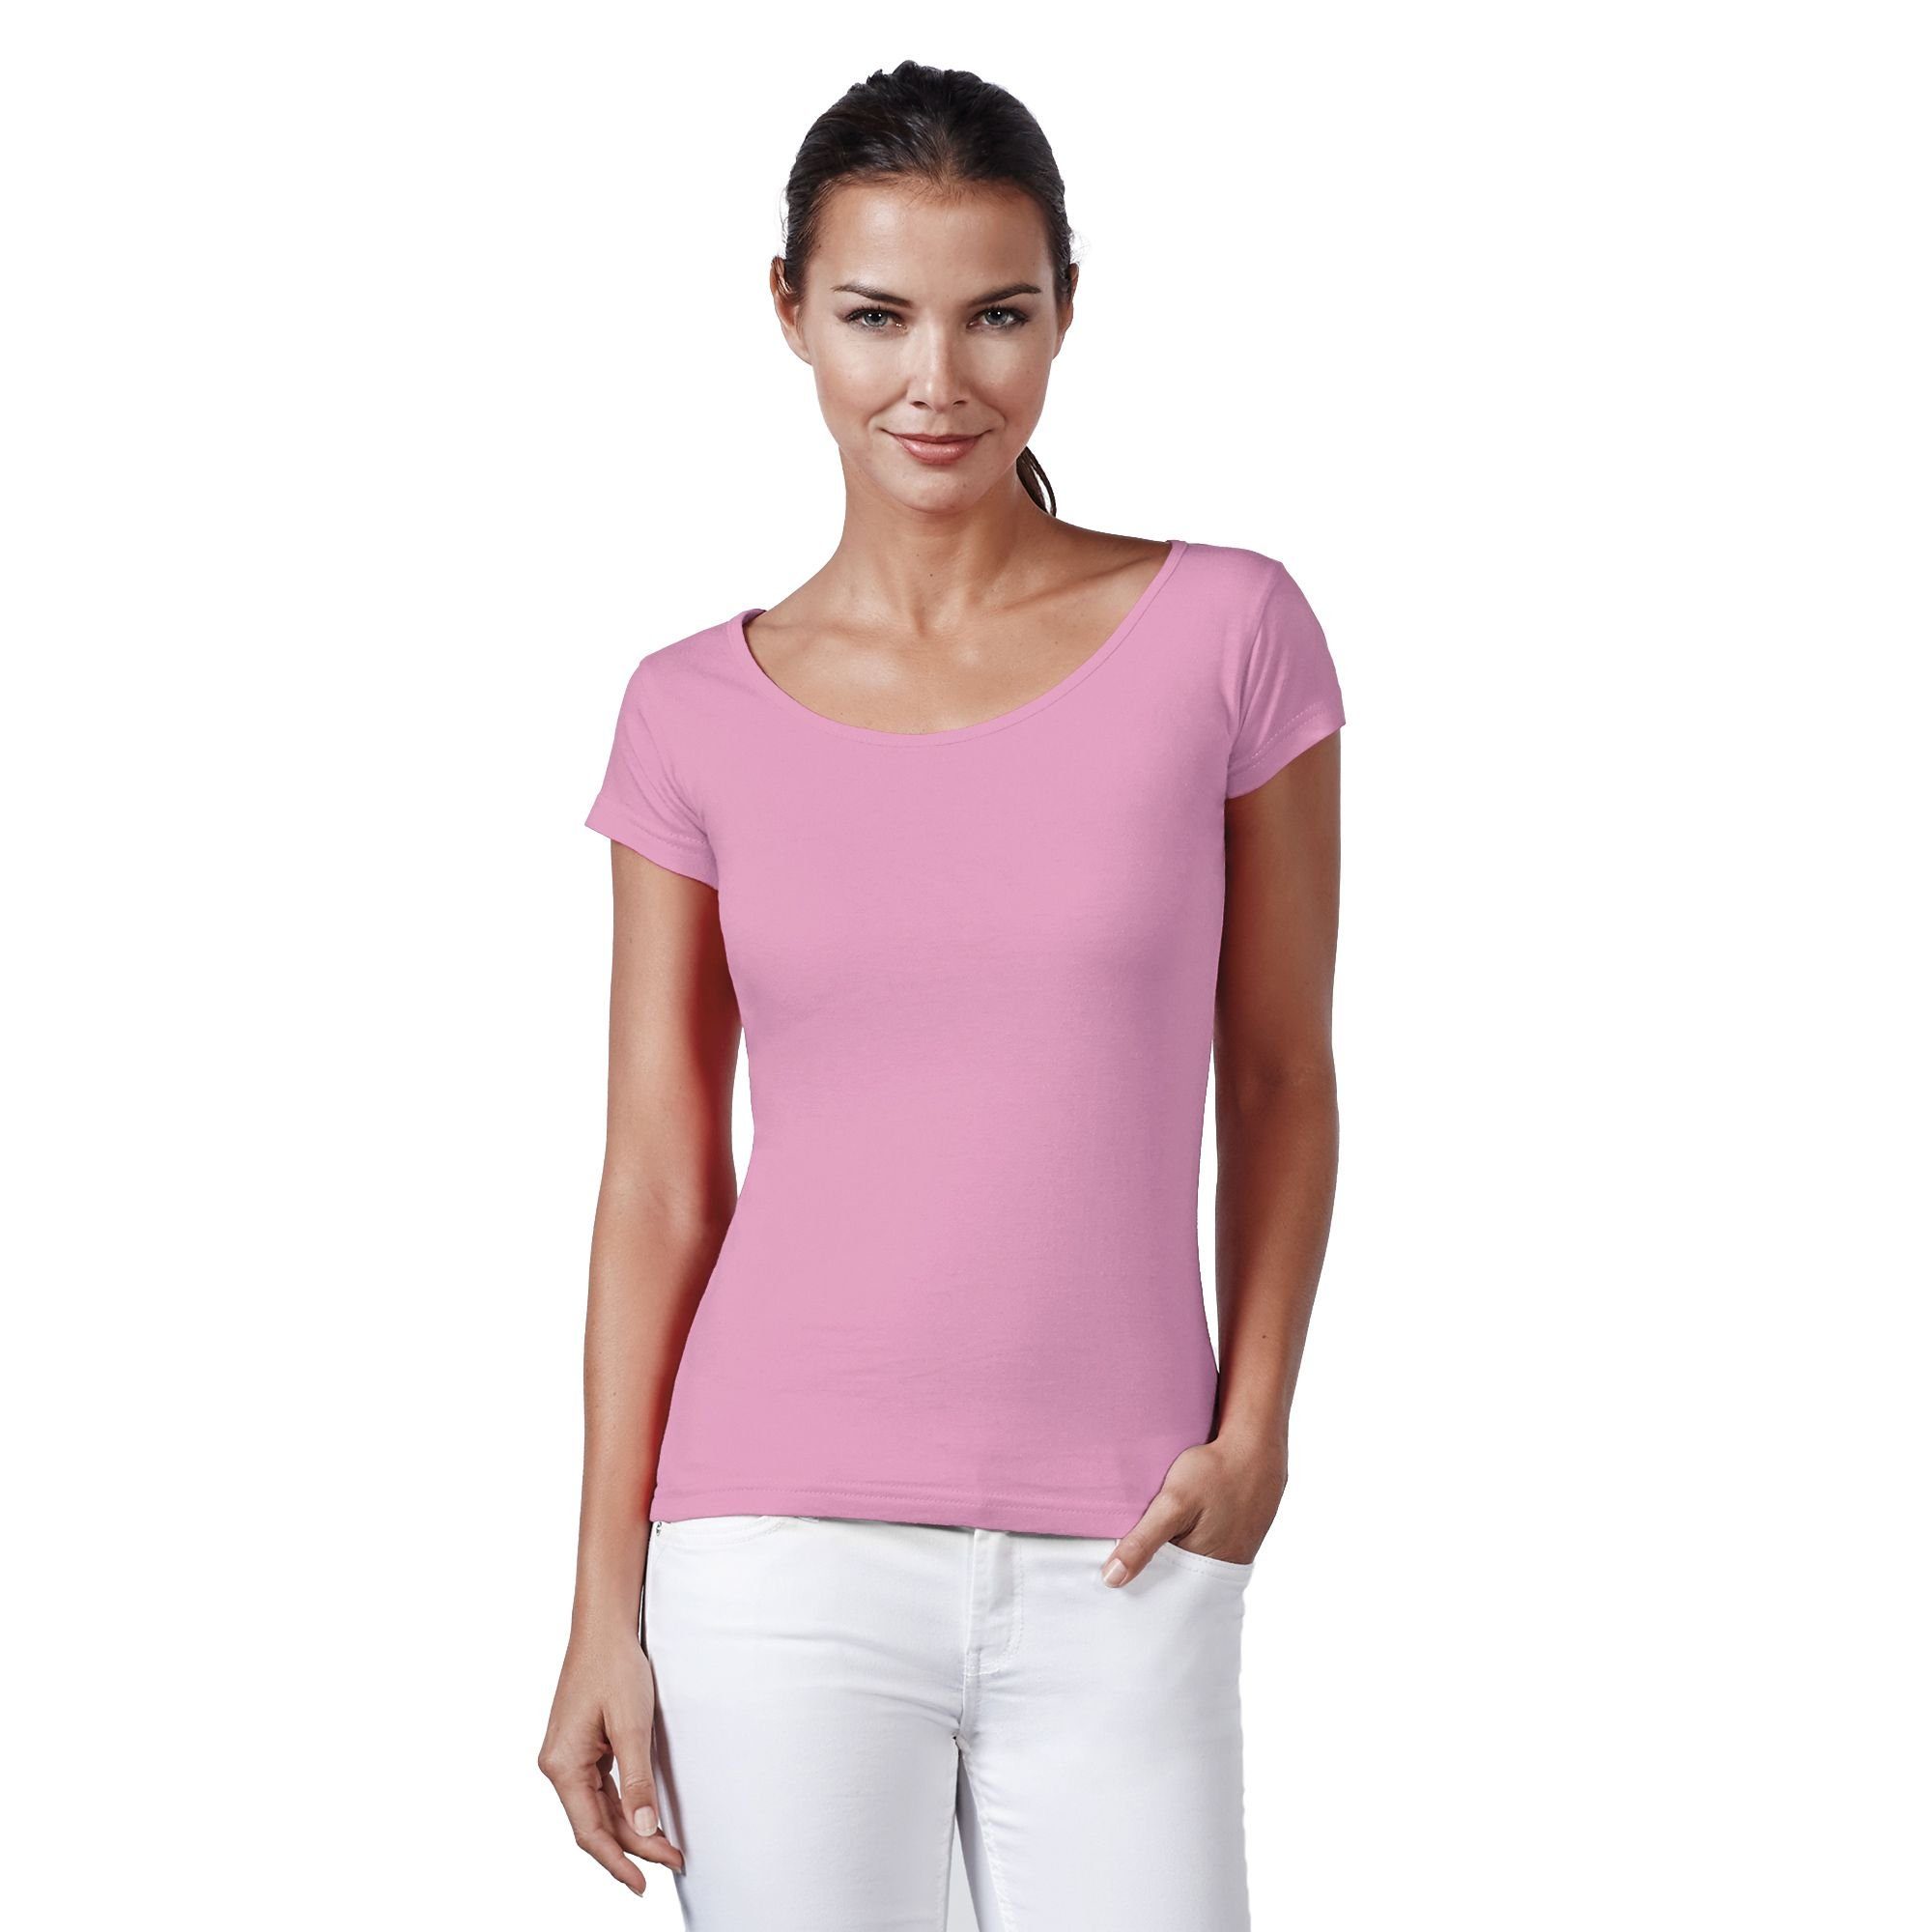 Neverless Print-Shirt »Neverless® Basic T-Shirt Damen Slim Fit Baumwolle  einfarbig Weiter Rundhals Ausschnitt« mit Print online kaufen | OTTO